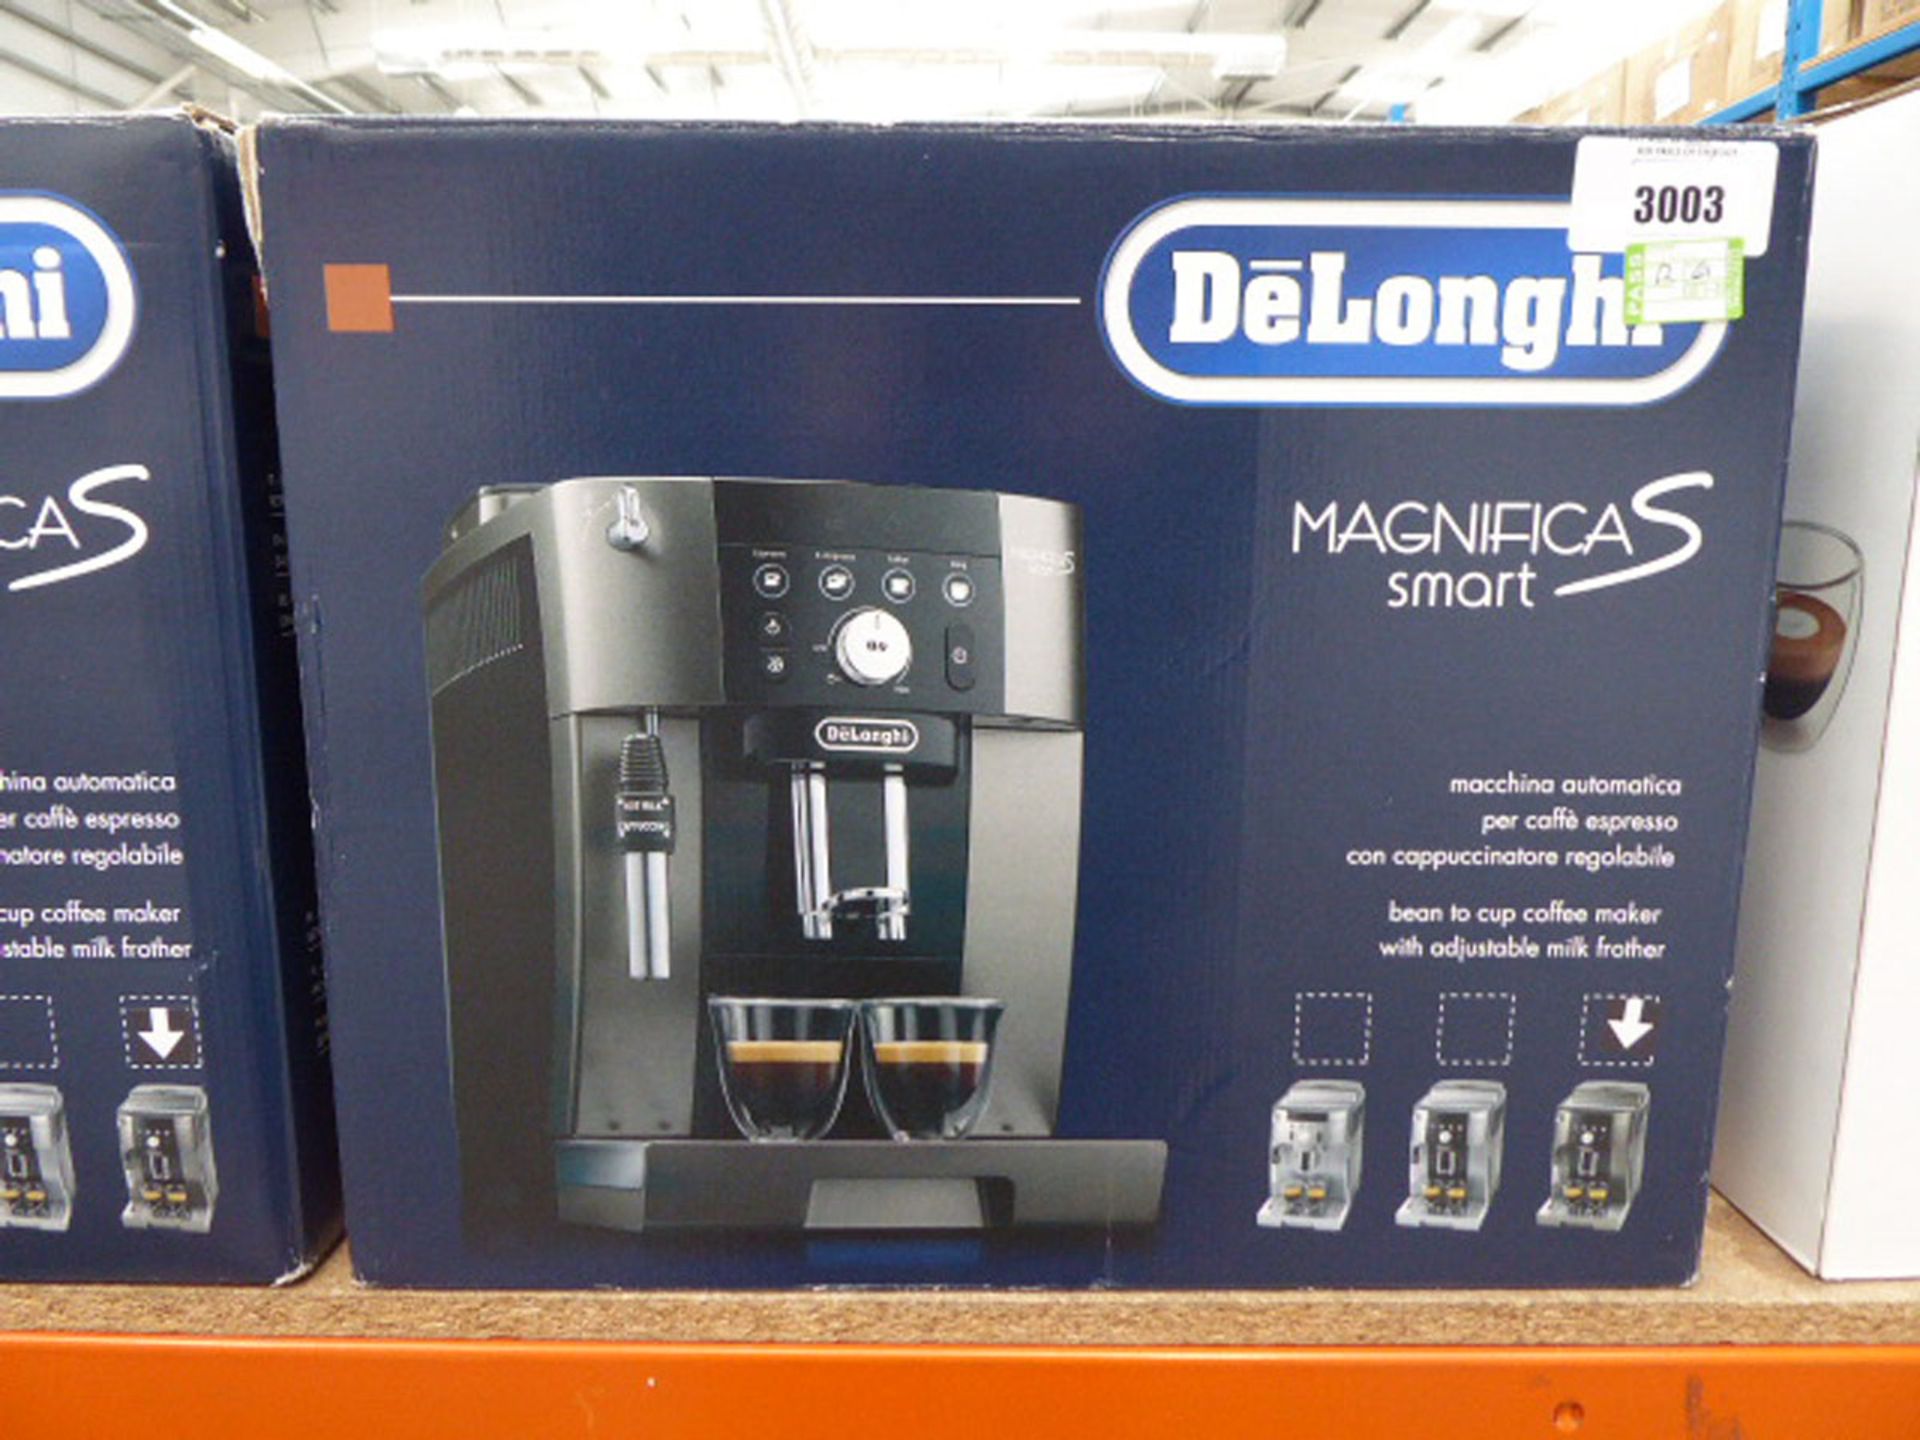 3030 Delonghi Magnifica S smart coffee machine with box